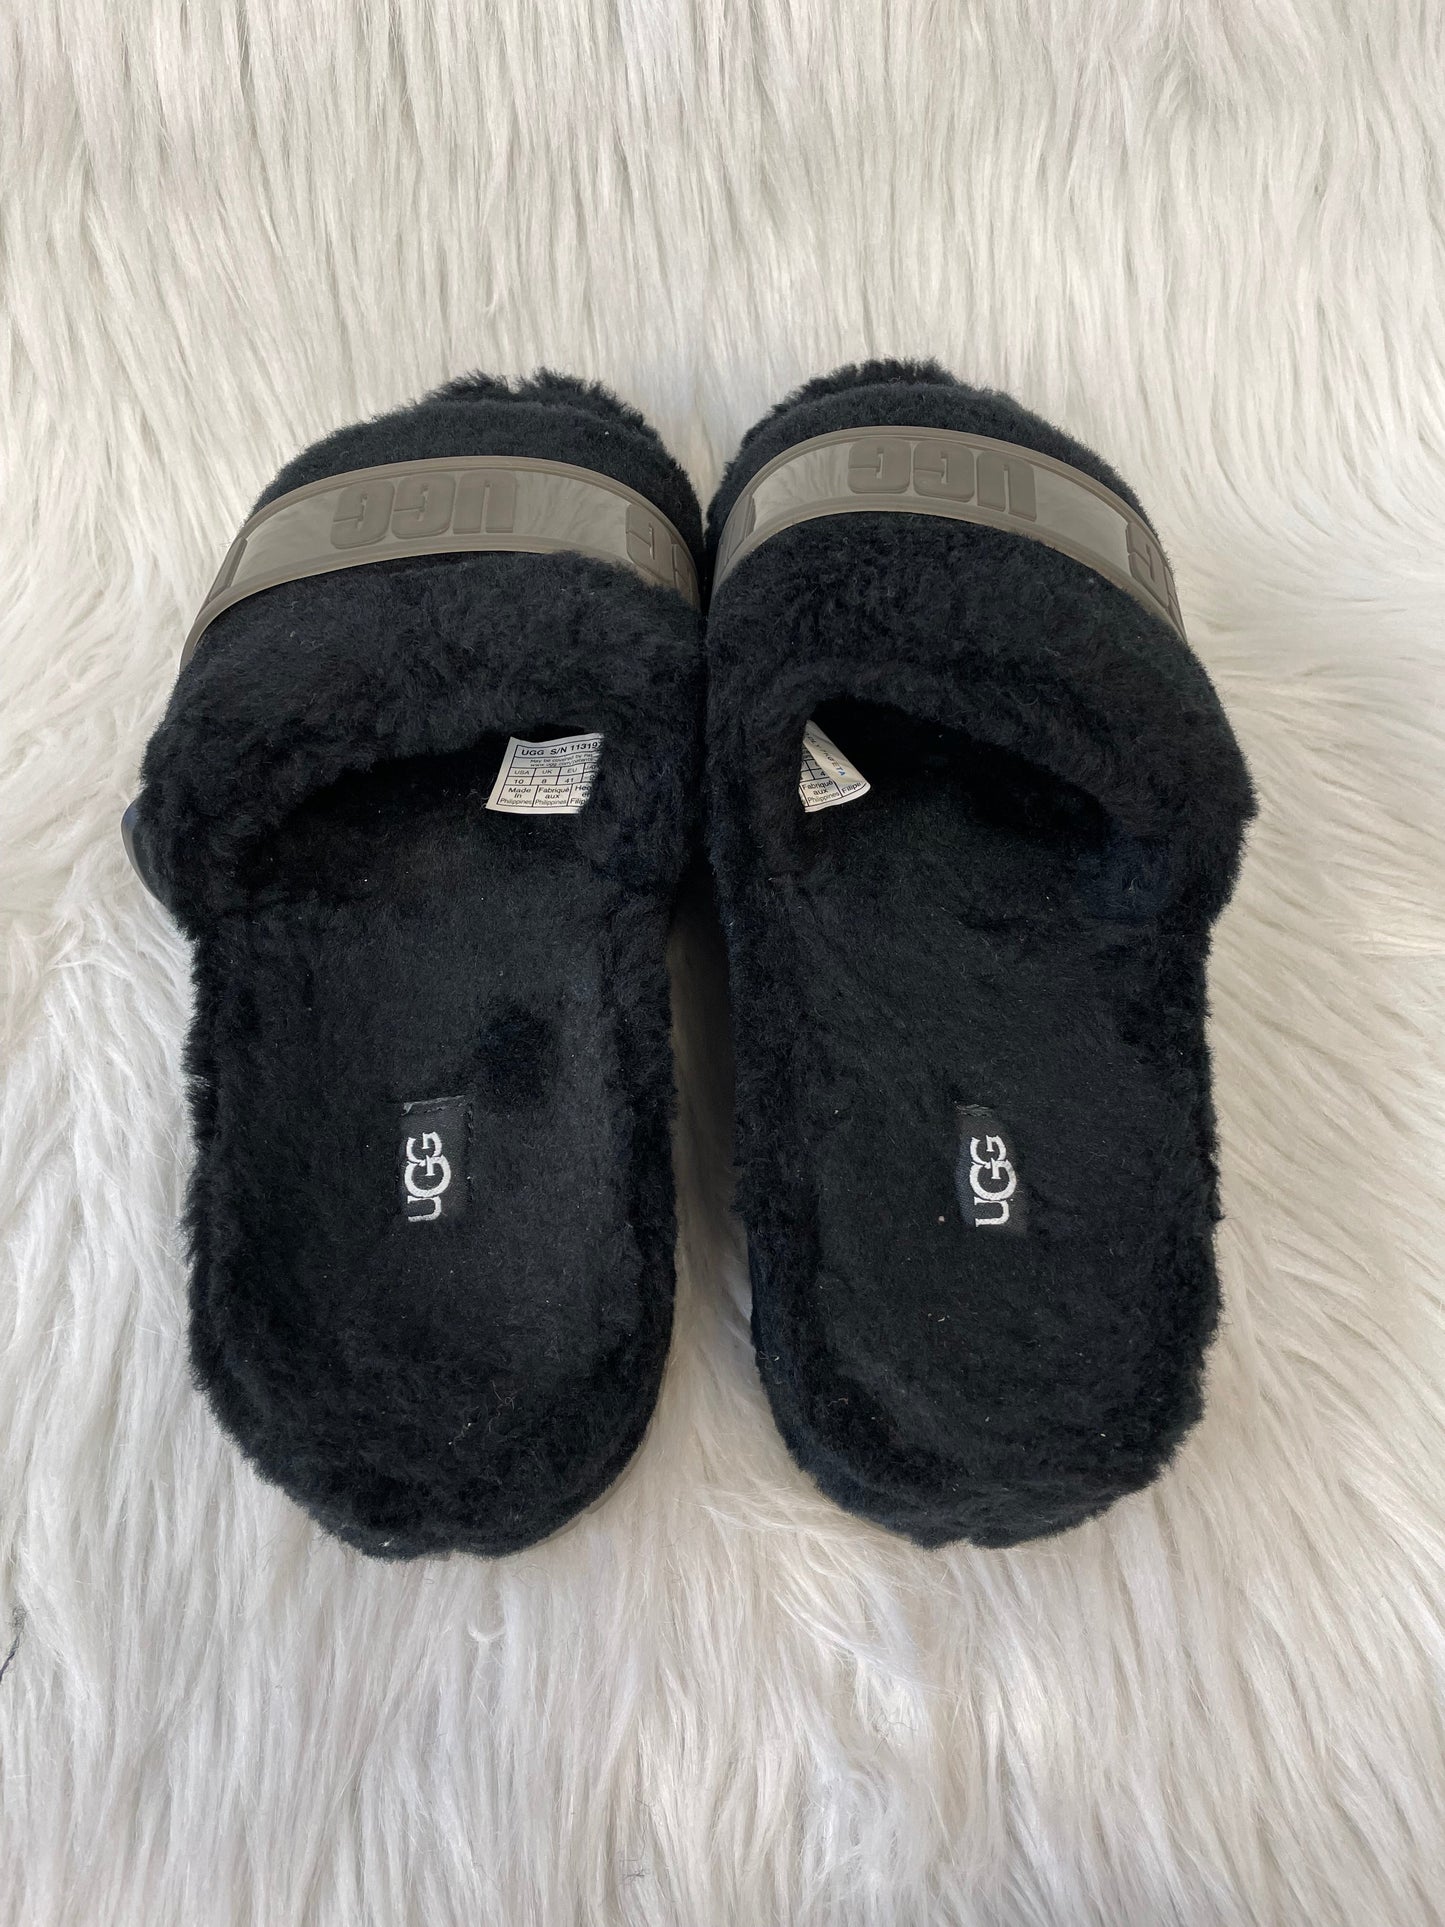 Black Sandals Designer Ugg, Size 10